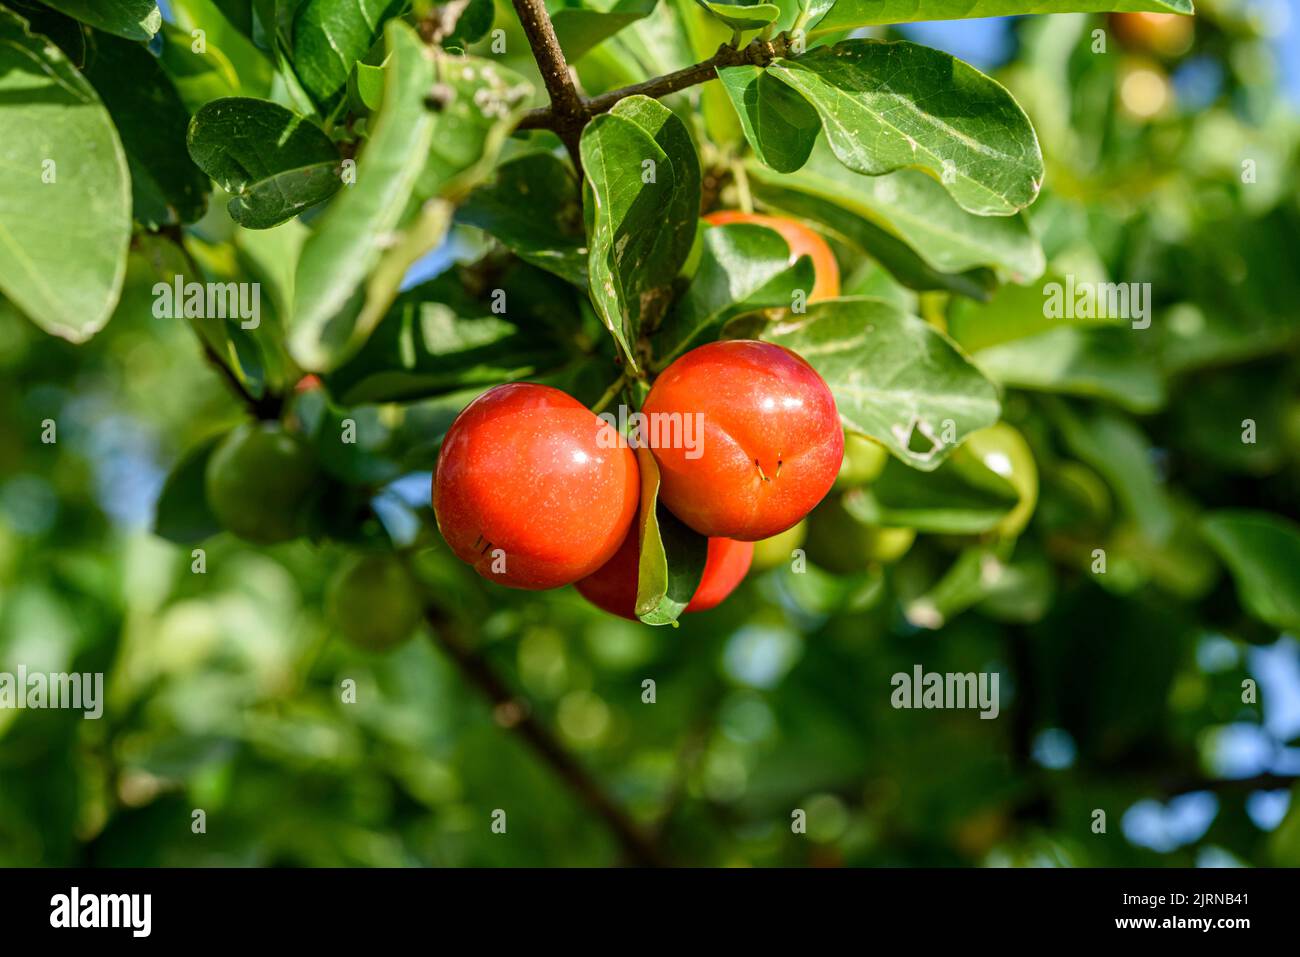 Acerola tree with many ripe fruits. Stock Photo